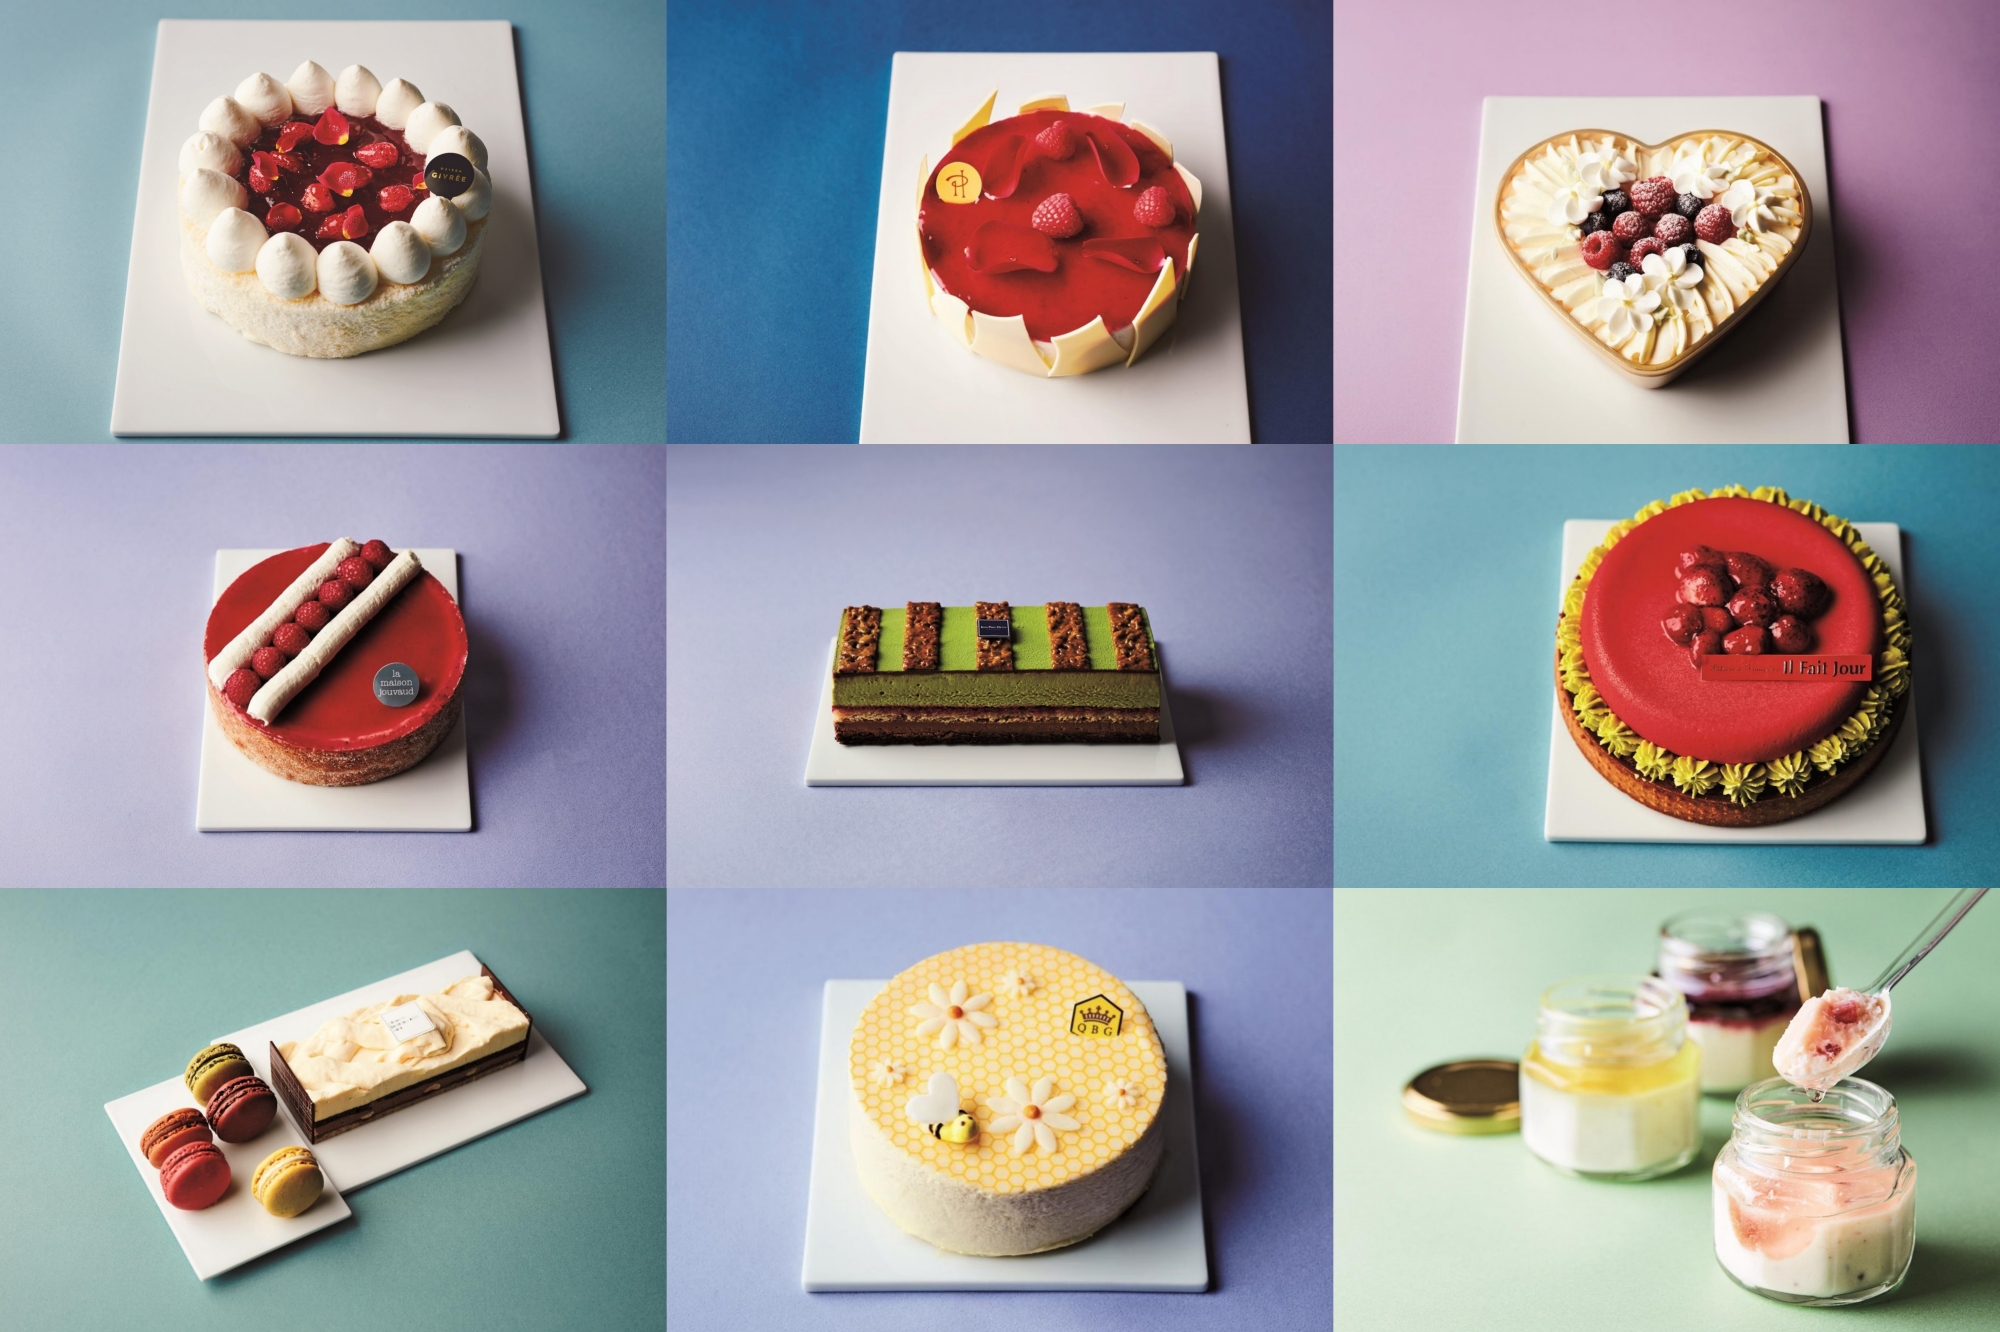 伊勢丹新宿店 冷凍ケーキを新しいギフトのスタイルの一つとして提案 三越伊勢丹オンラインストア 東京 名古屋 スイーツジャーナリスト 美味しい食べ物は人を幸せにする